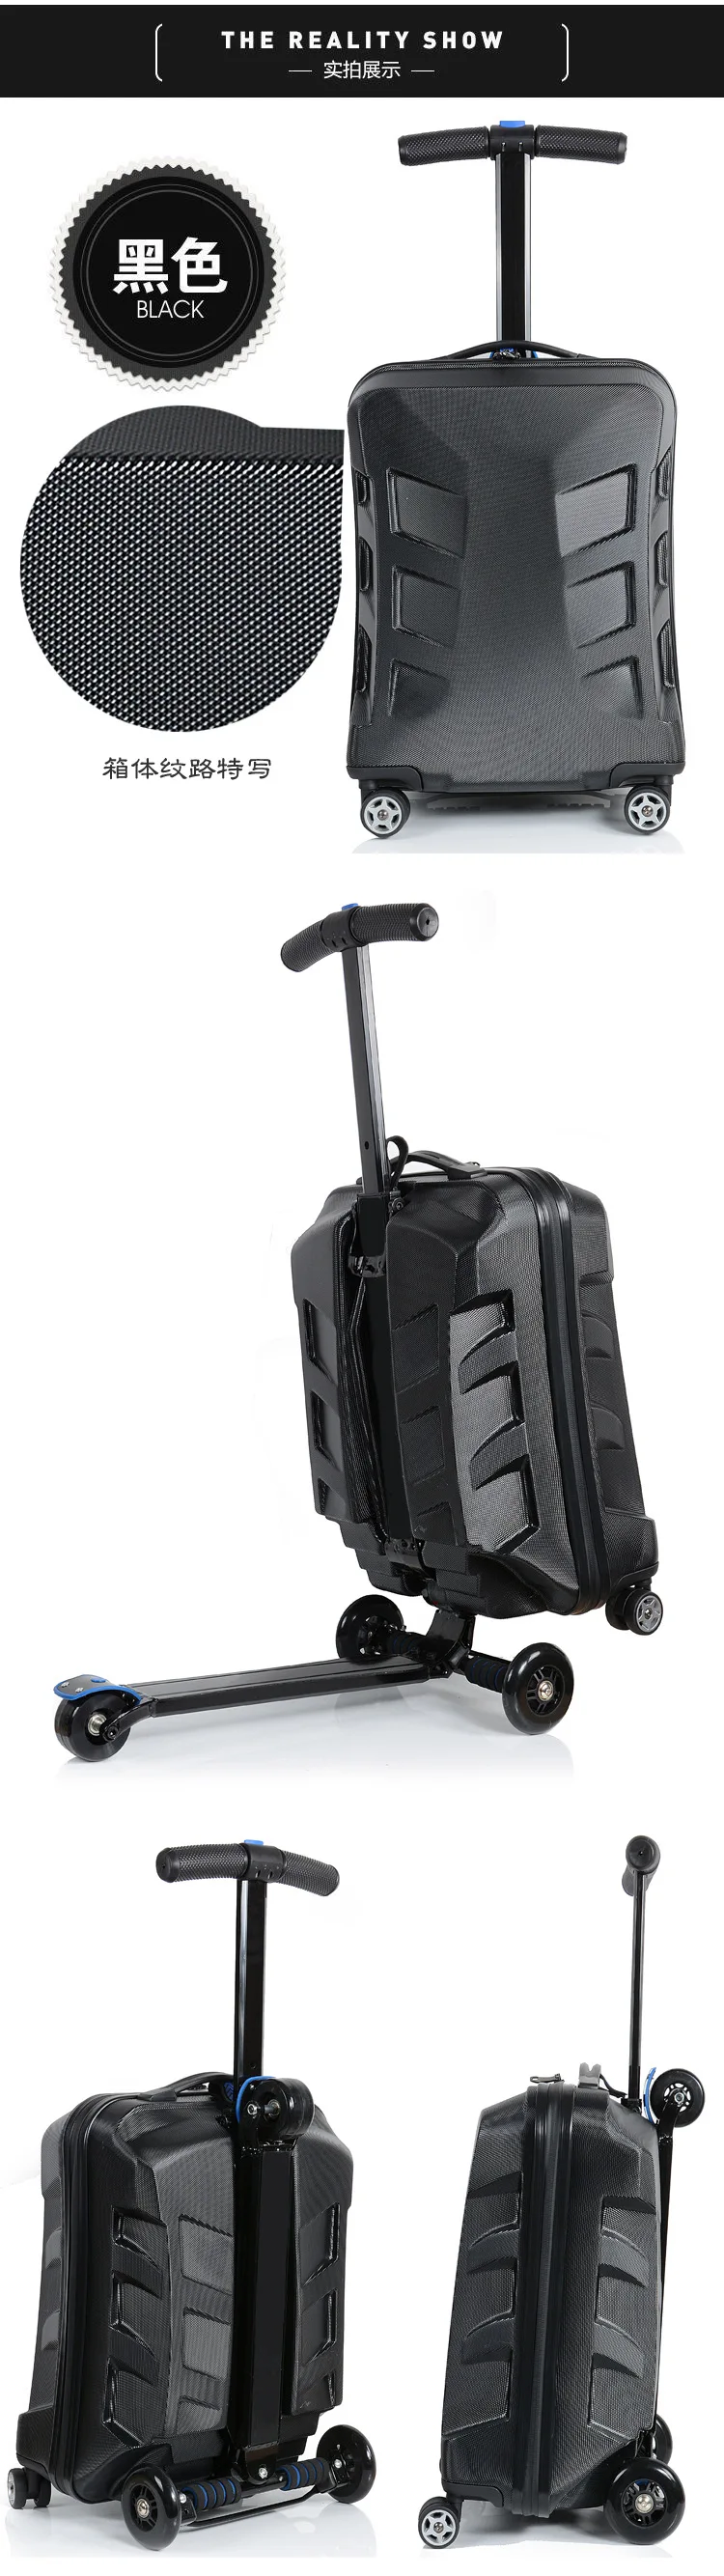 CARRYLOVE, высокое качество, шт., персональный крутой скутер, чемодан, переноска на Спиннер, колесо, многофункциональный багаж для путешествий 21"